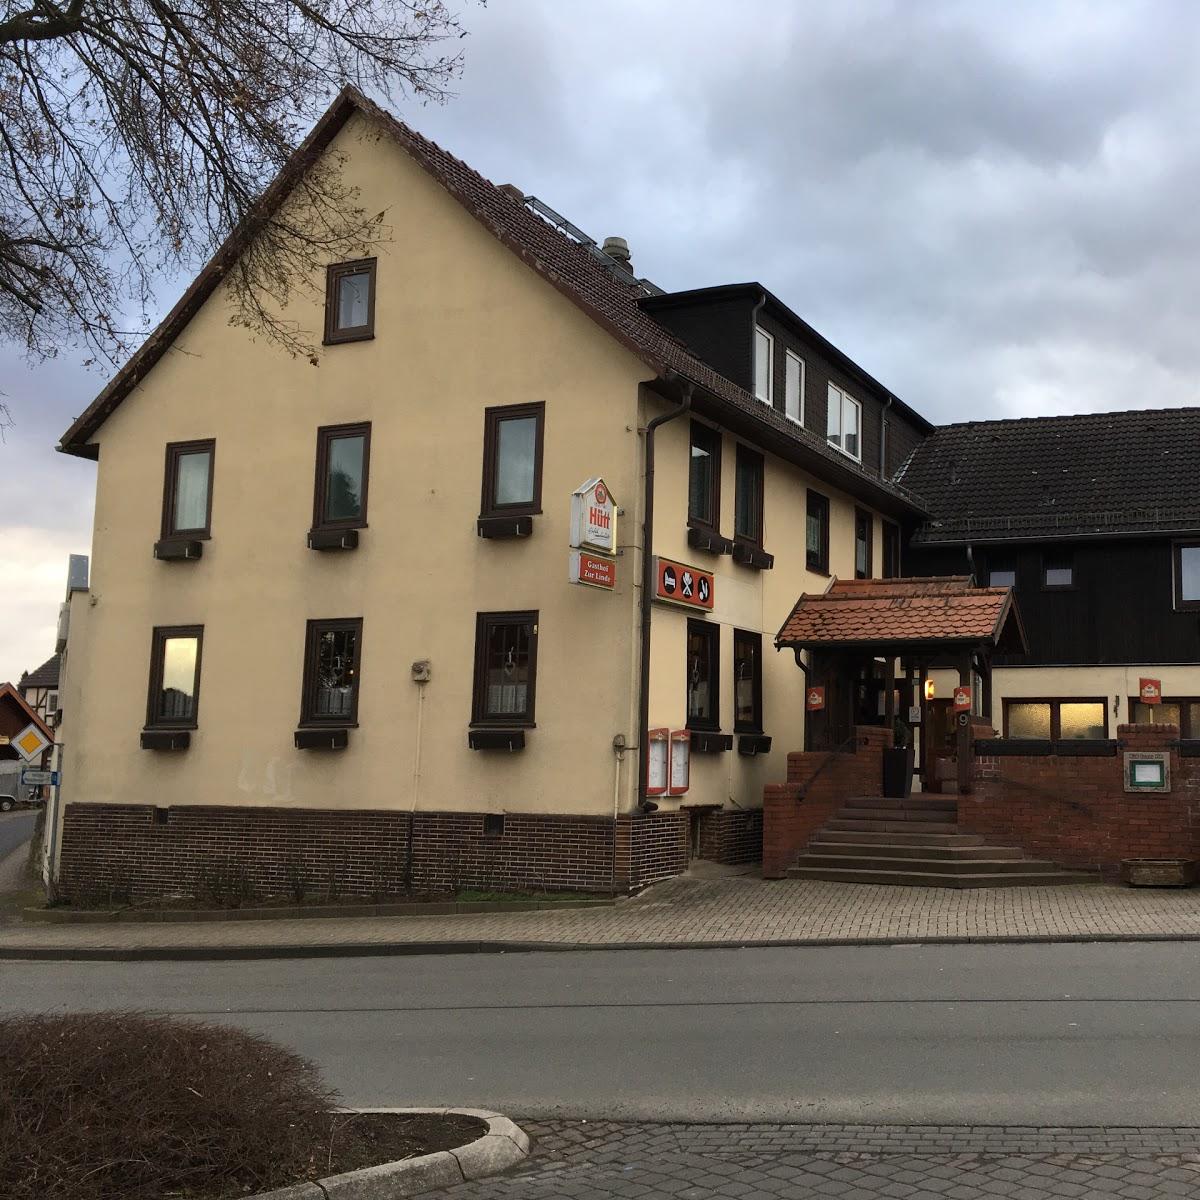 Restaurant "Gasthof Zur Linde" in  Edermünde